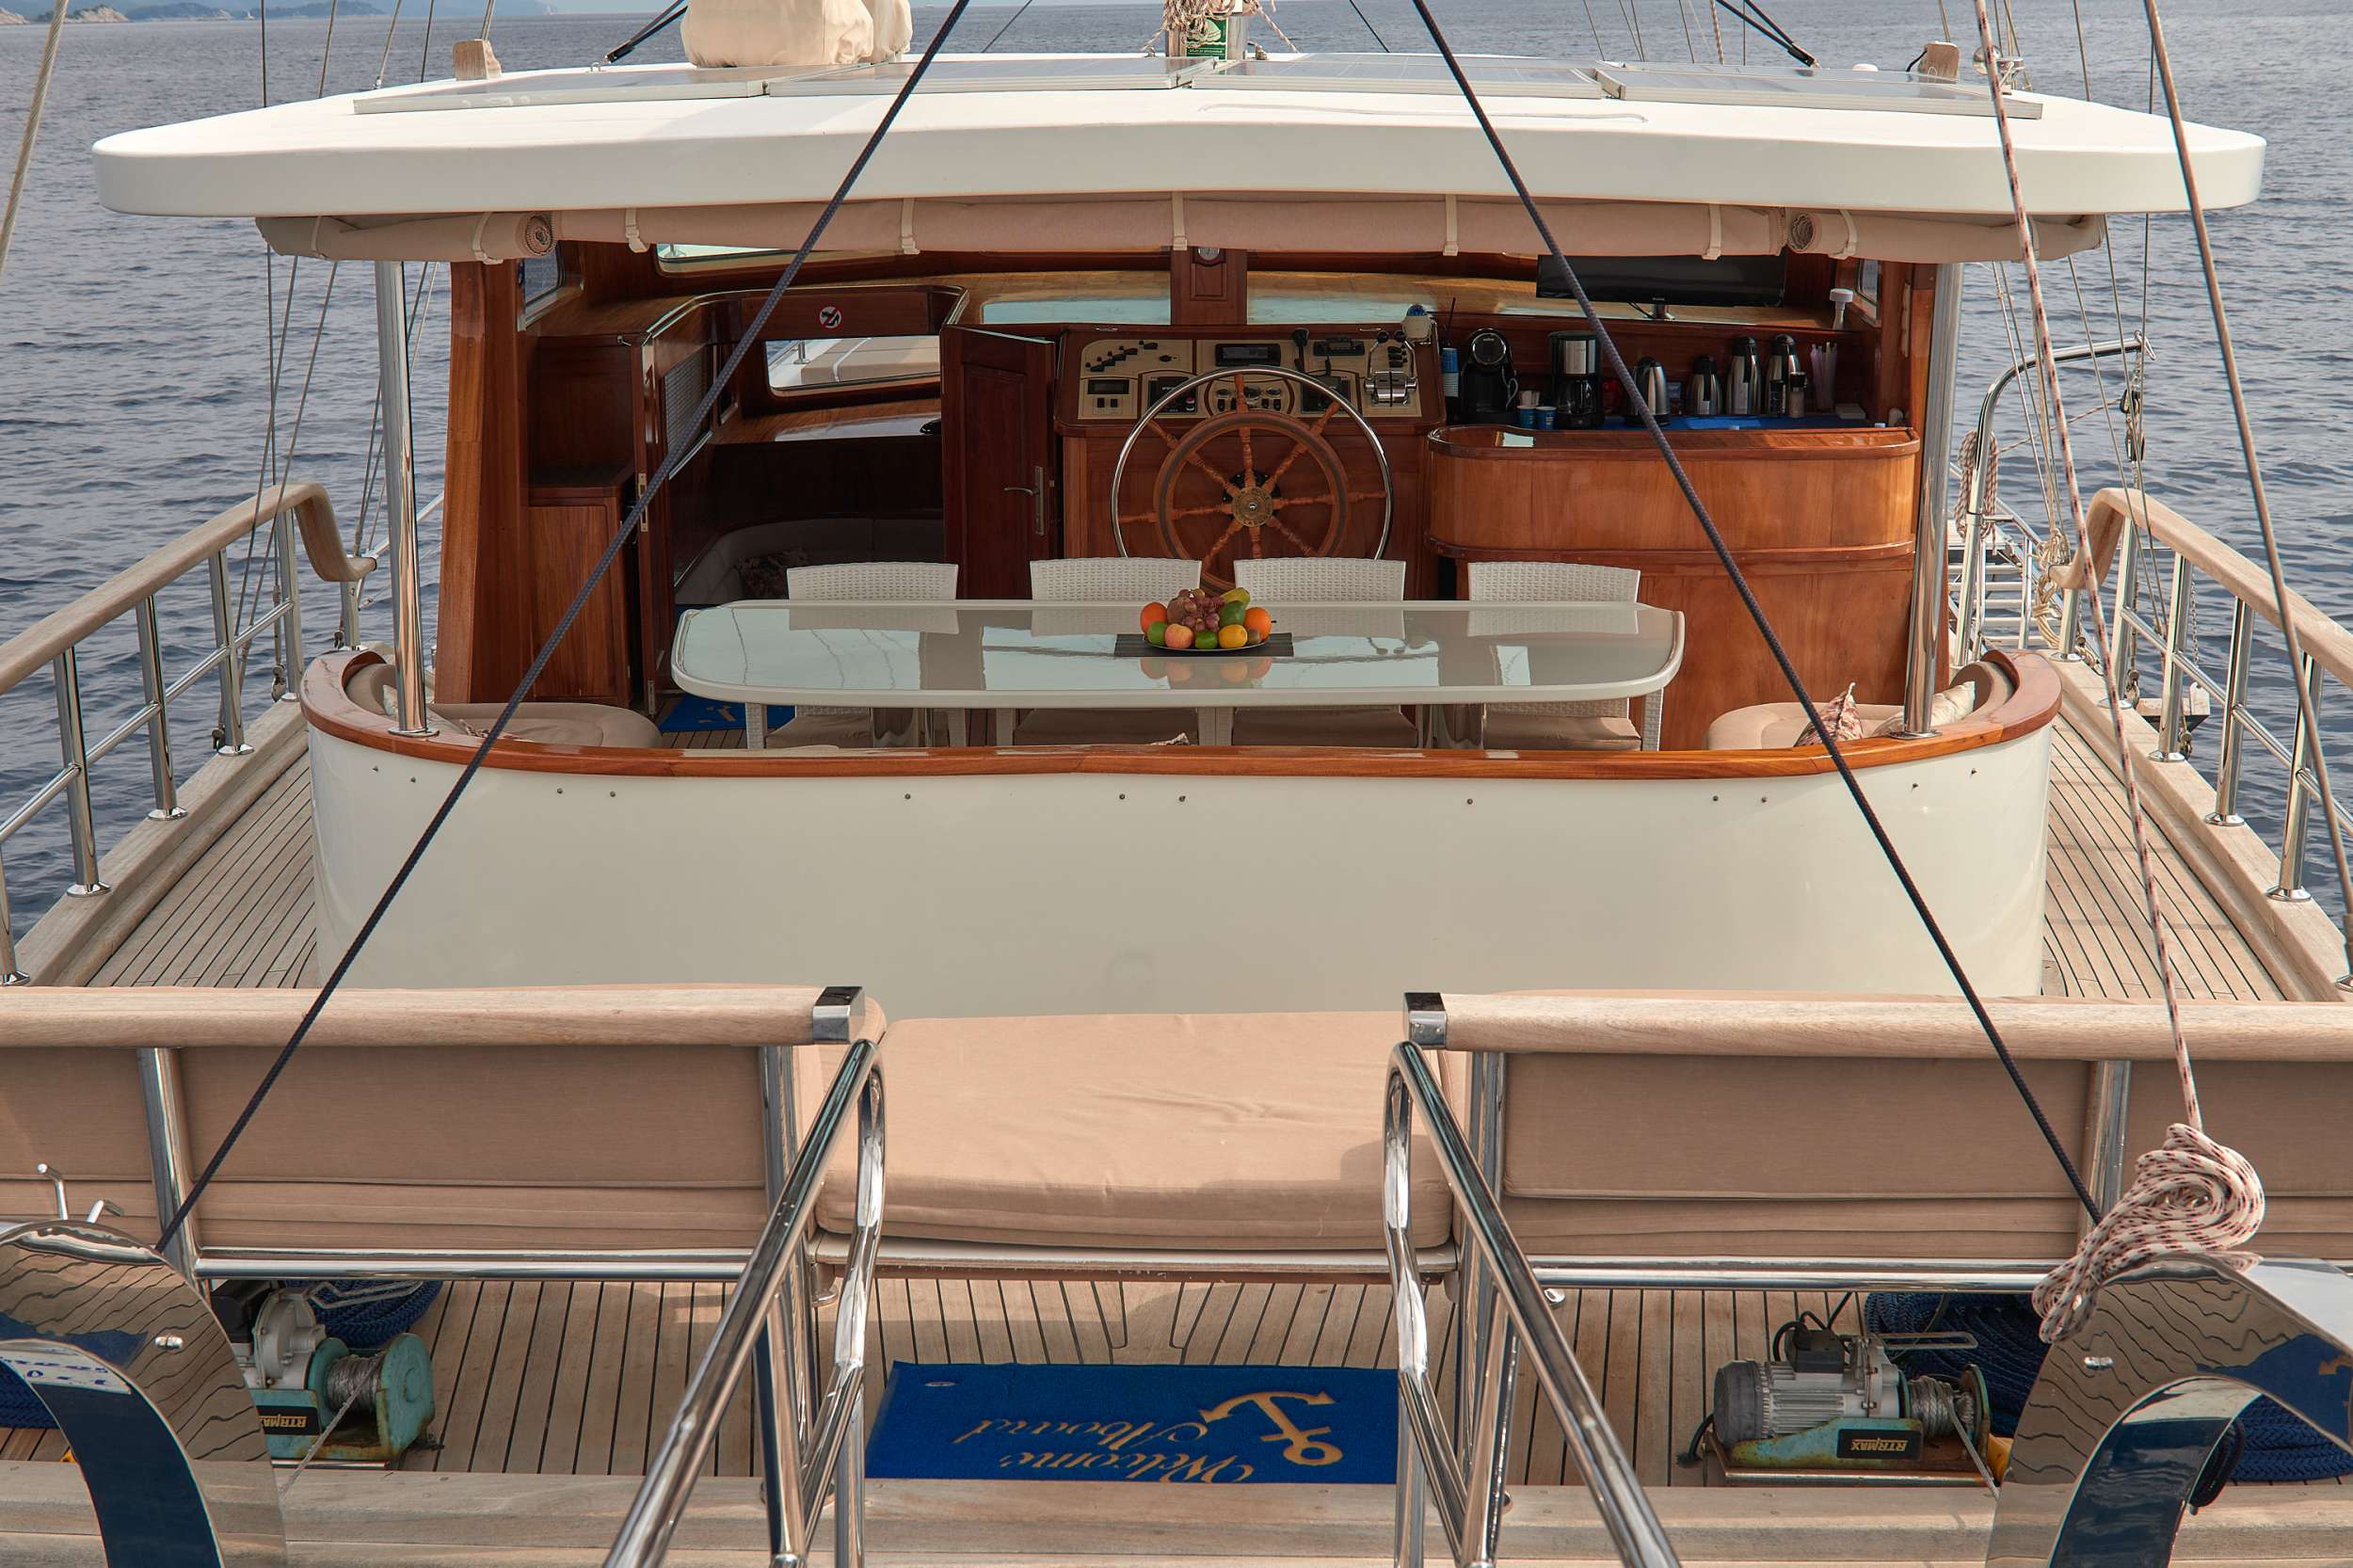 SEA BREEZE - Yacht Charter Ploče & Boat hire in Croatia 4